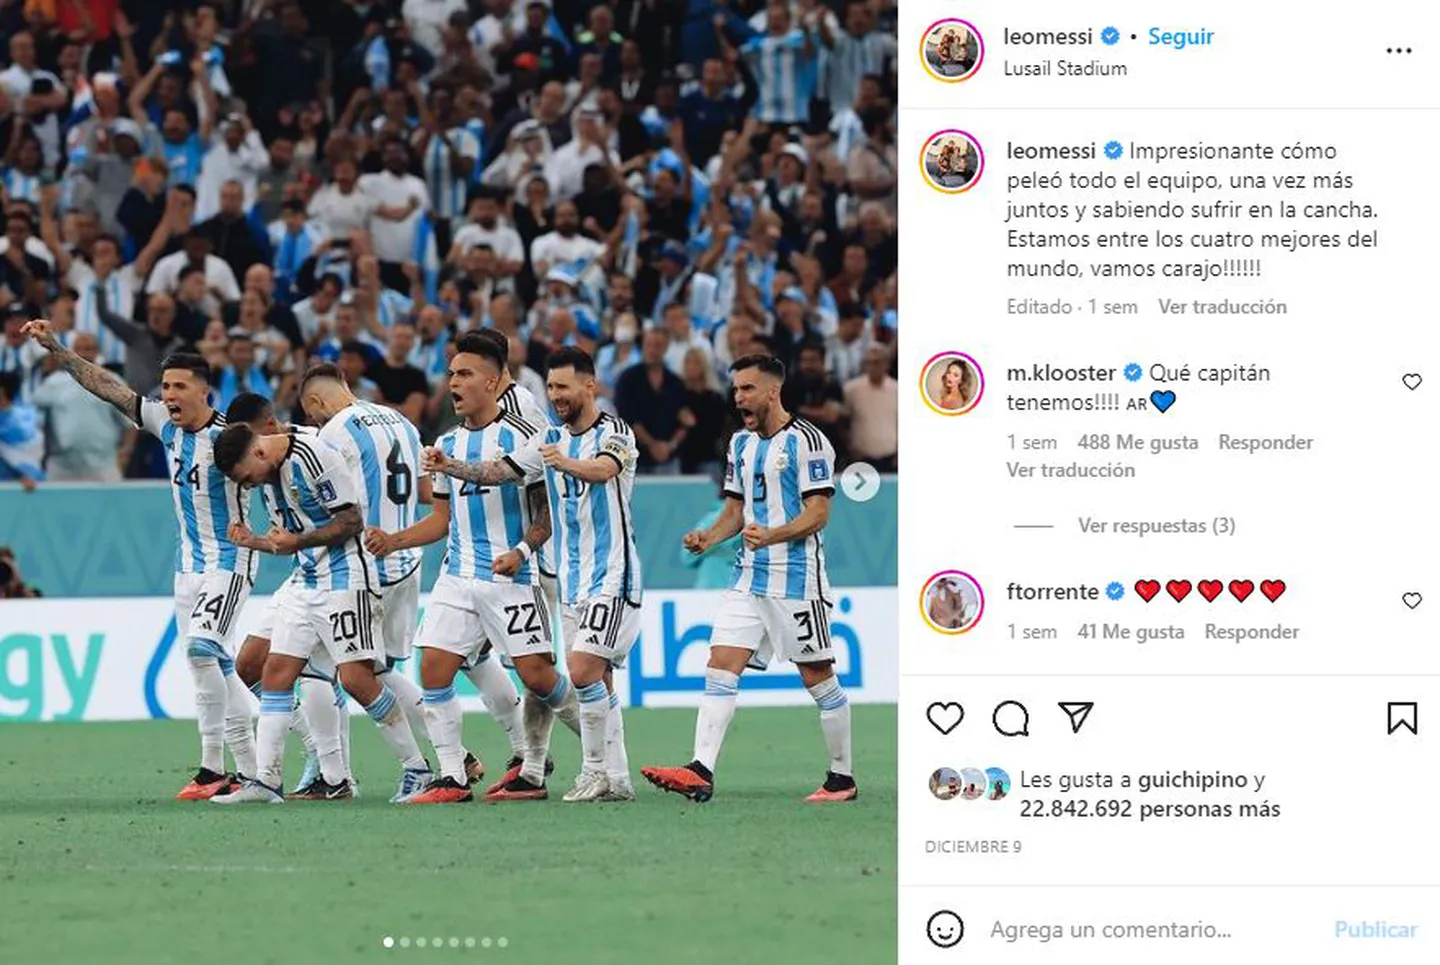 El récord de Messi: de las 20 fotos con más likes en Instagram, 9 son de él • Canal C